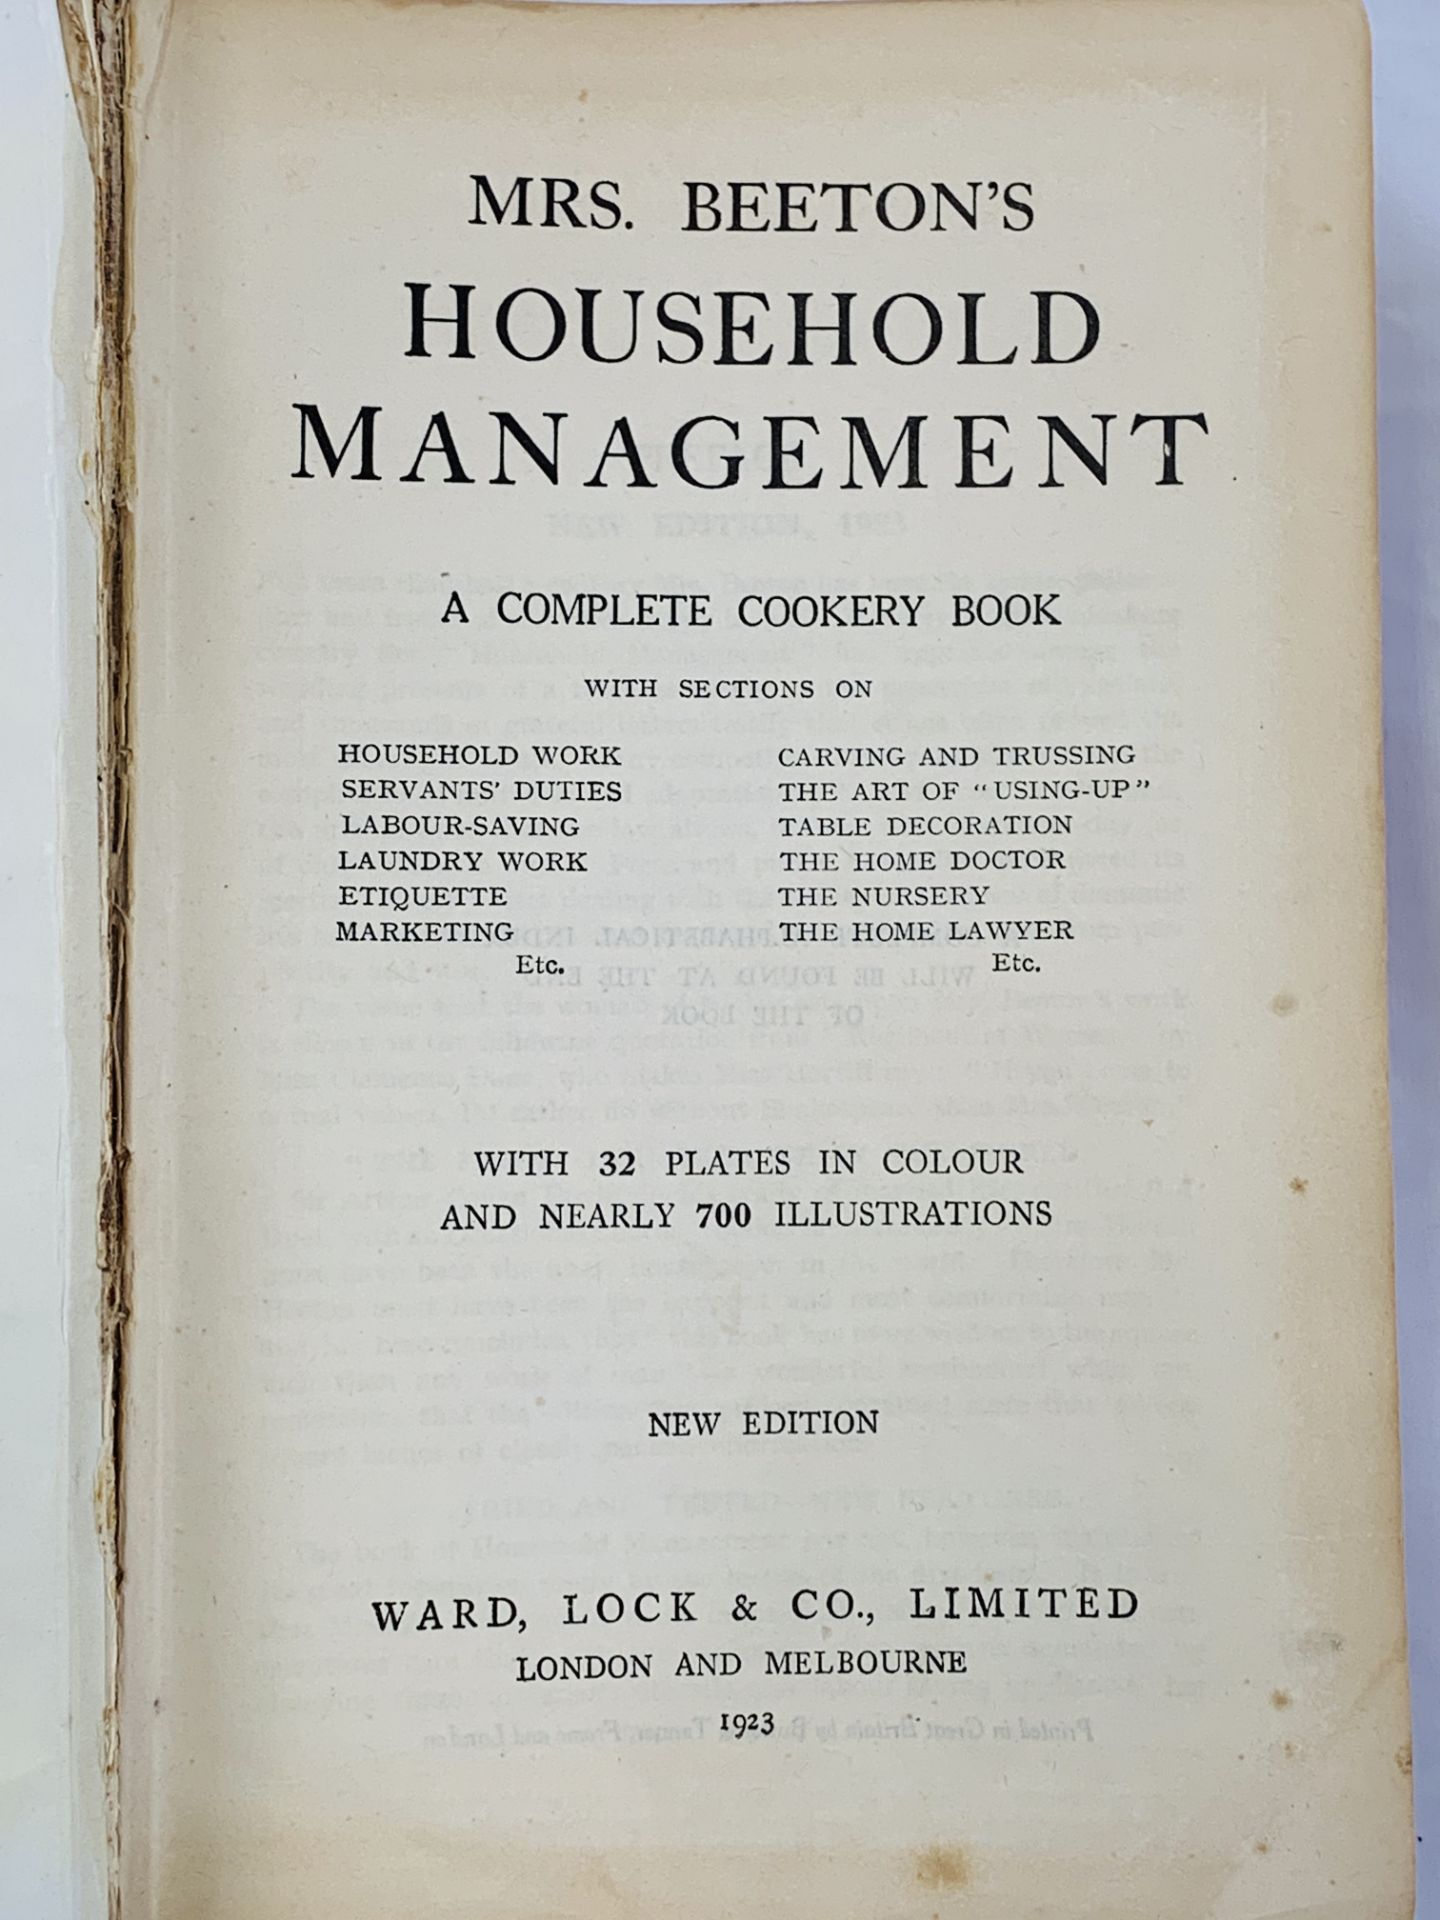 Mrs Beeton's Household Management, published 1923 - Image 2 of 4